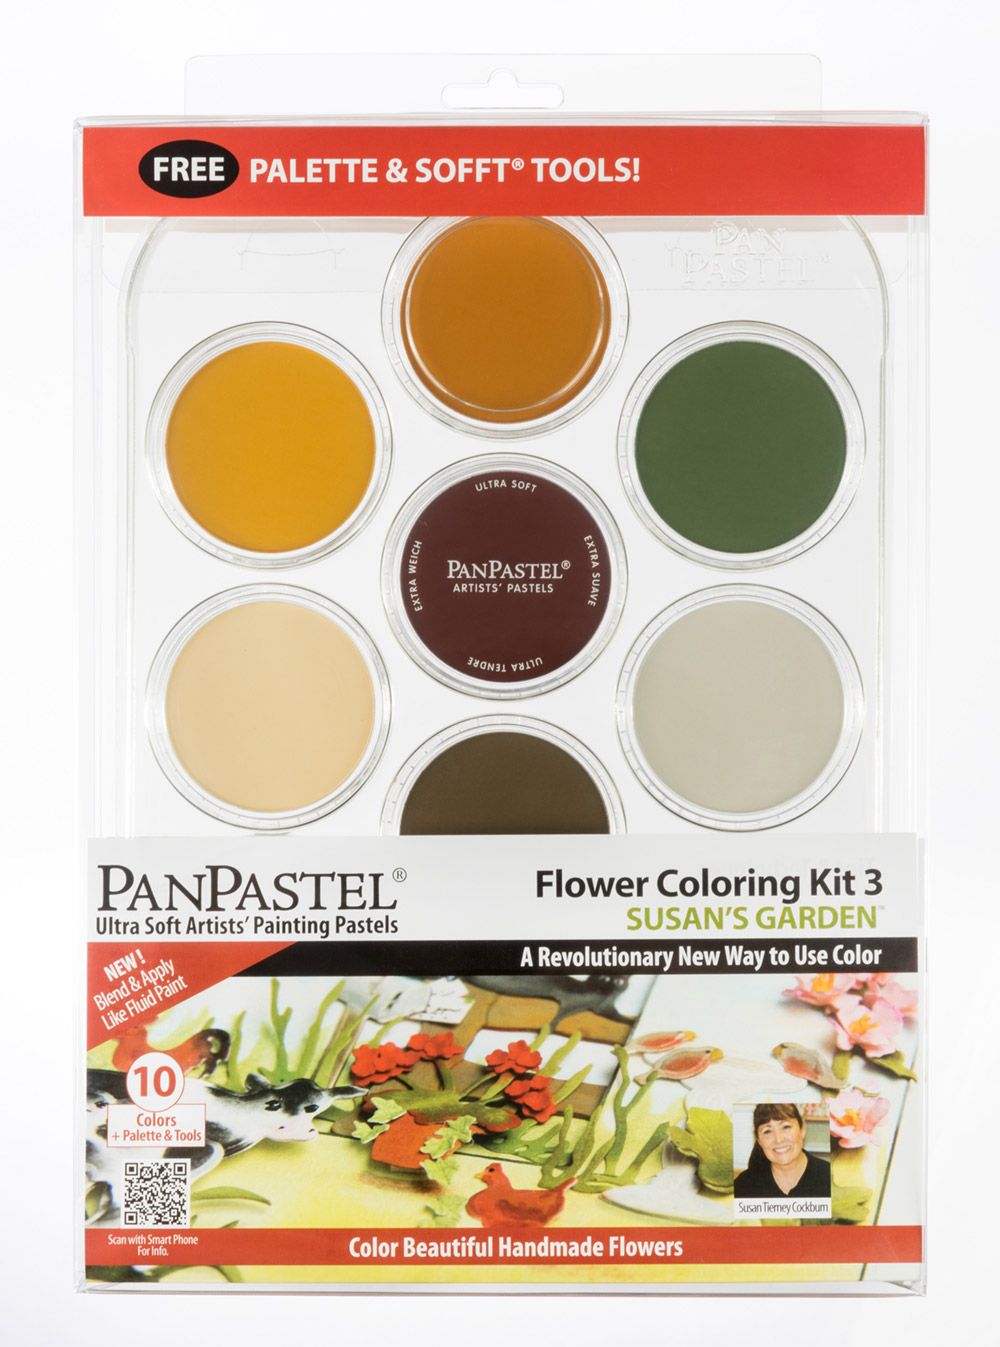 PanPastel 30117 Susan's Garden Flower Coloring Kit No. 3 (10 Кольорів)